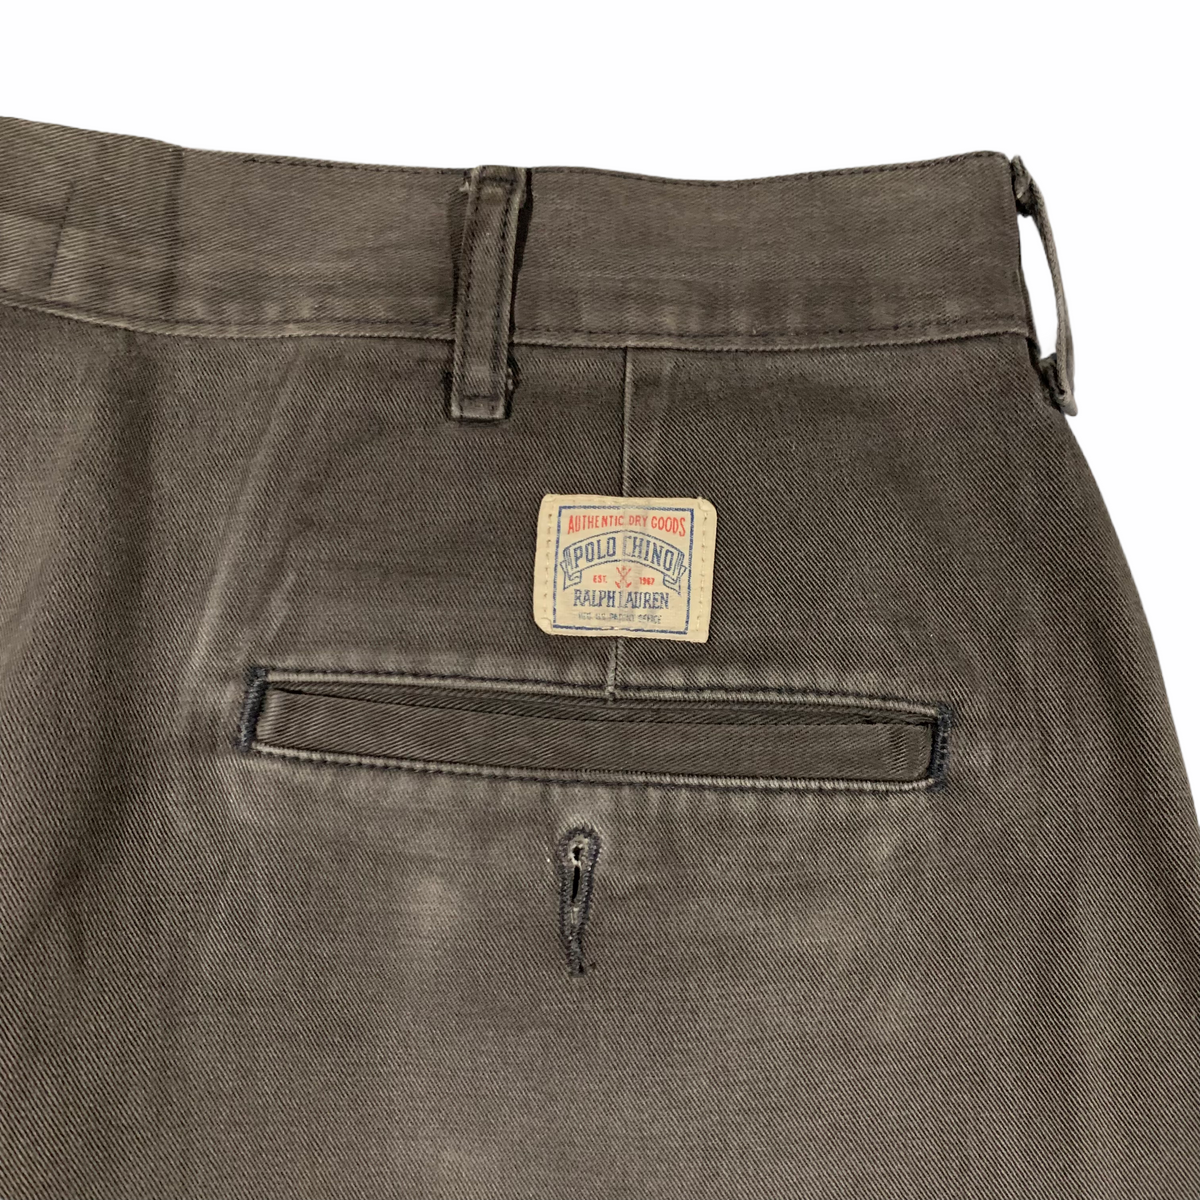 1990's Polo Ralph Lauren slacks. Made in USA. 34x34. – Vintage Sponsor